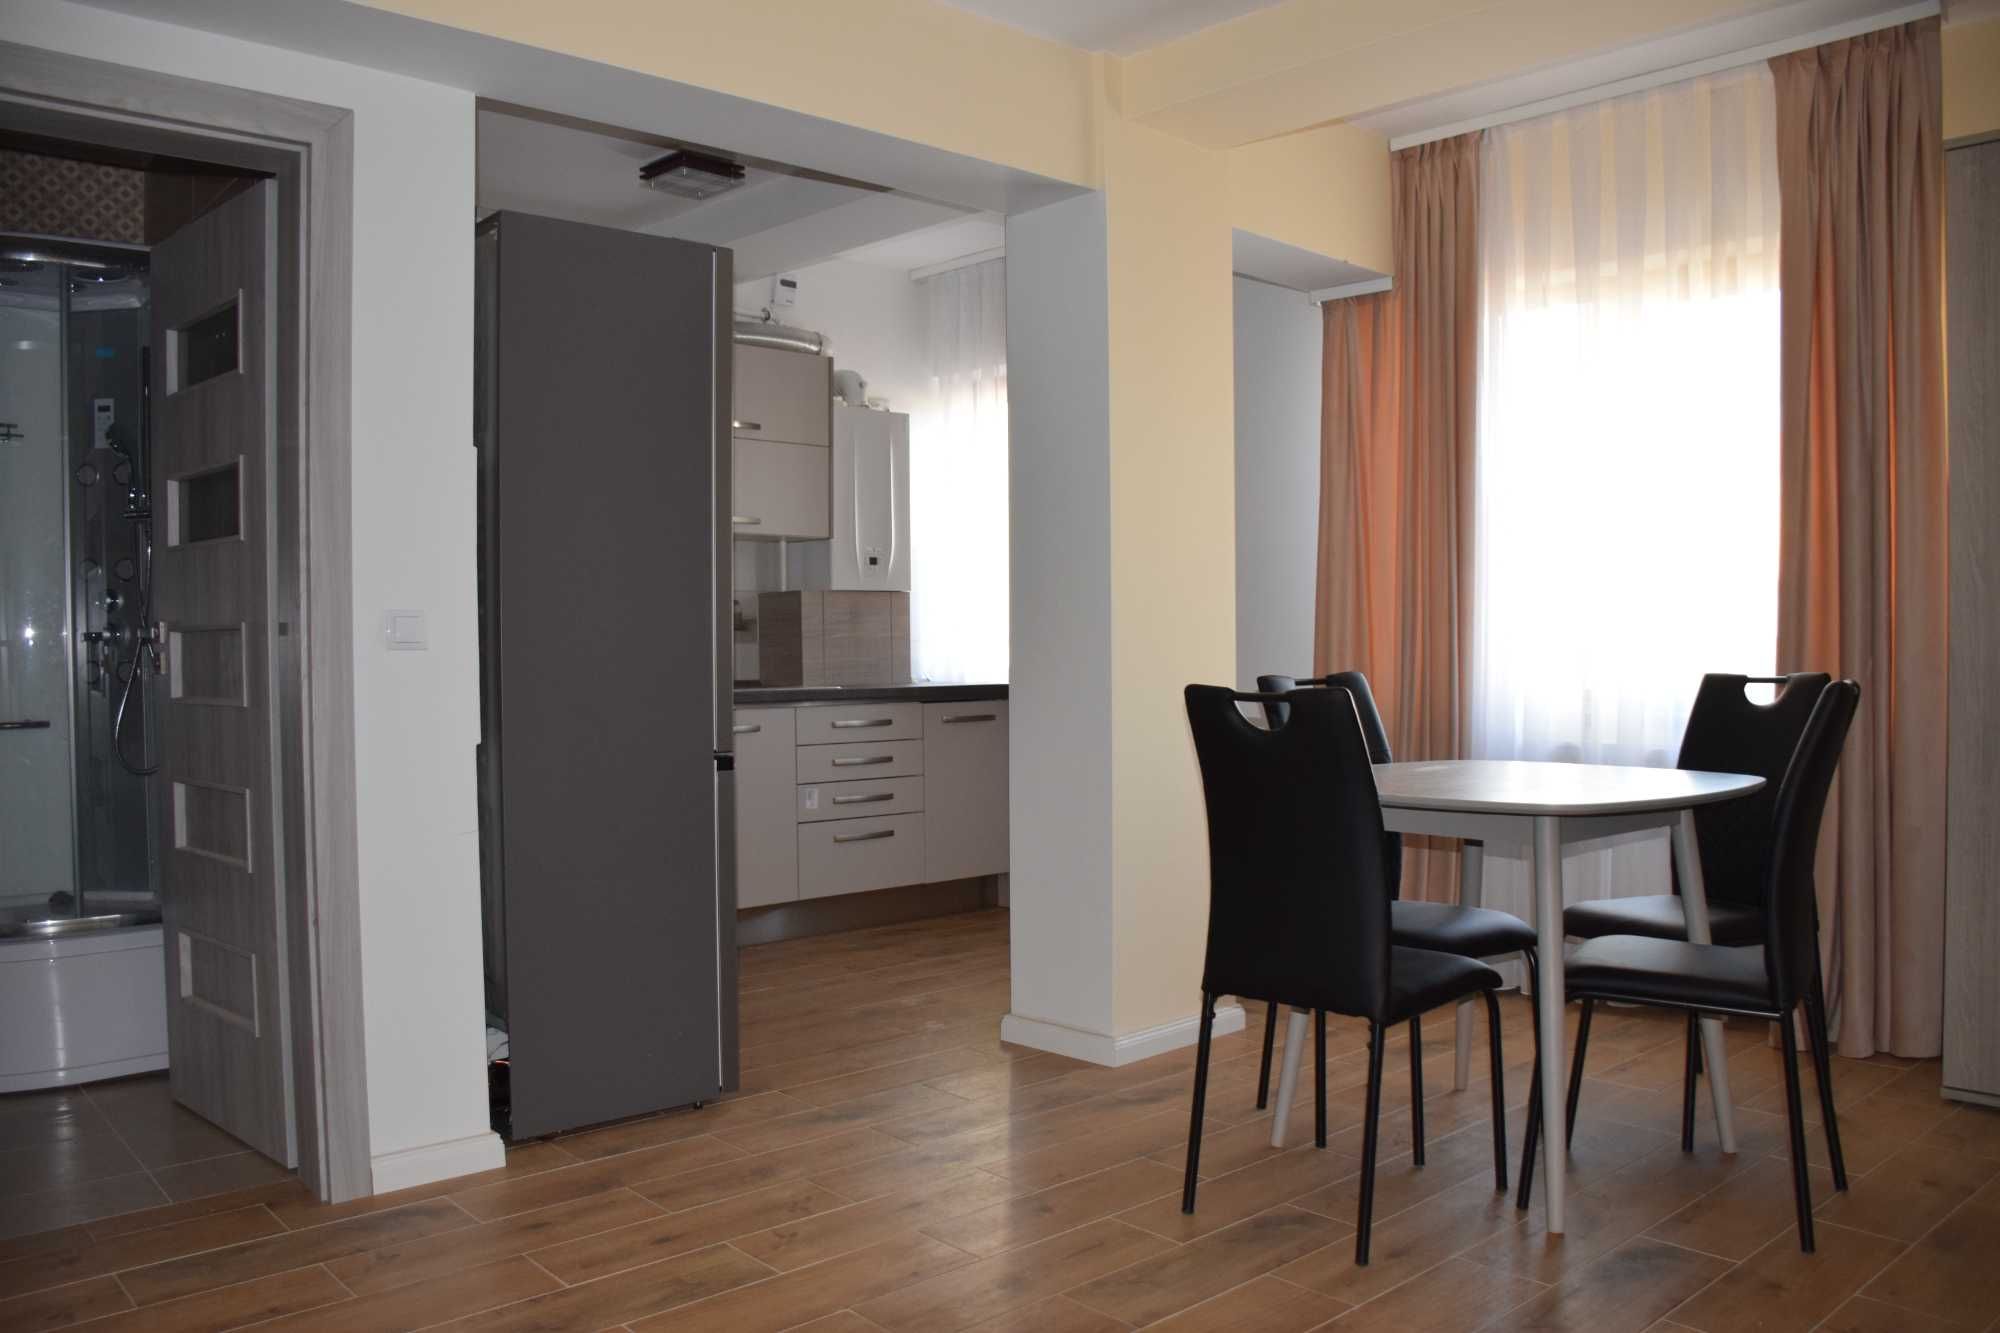 De inchiriat apartament 1 camera,nou,strada Lacul Rosu,Oradea